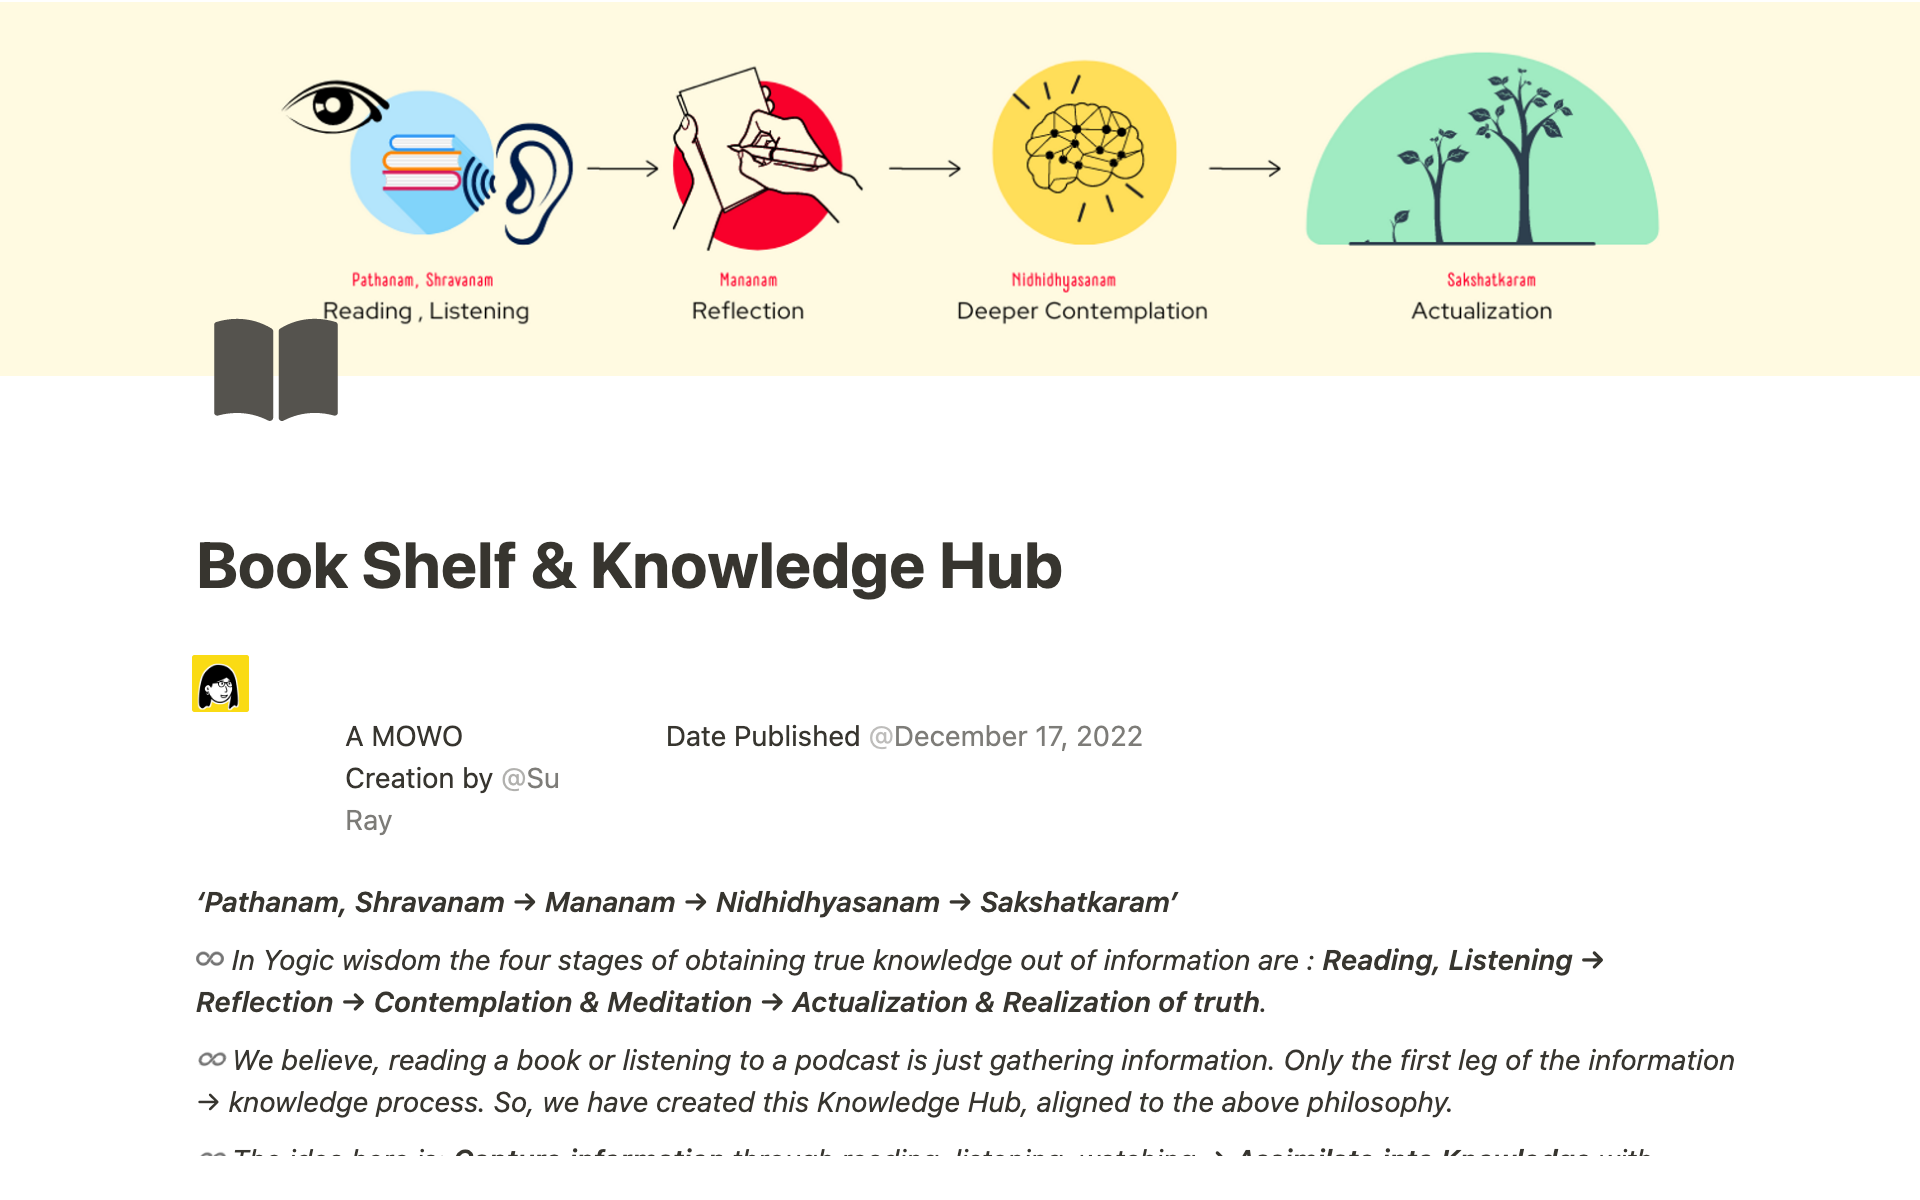 Uma prévia do modelo para Book Shelf & Knowledge Hub